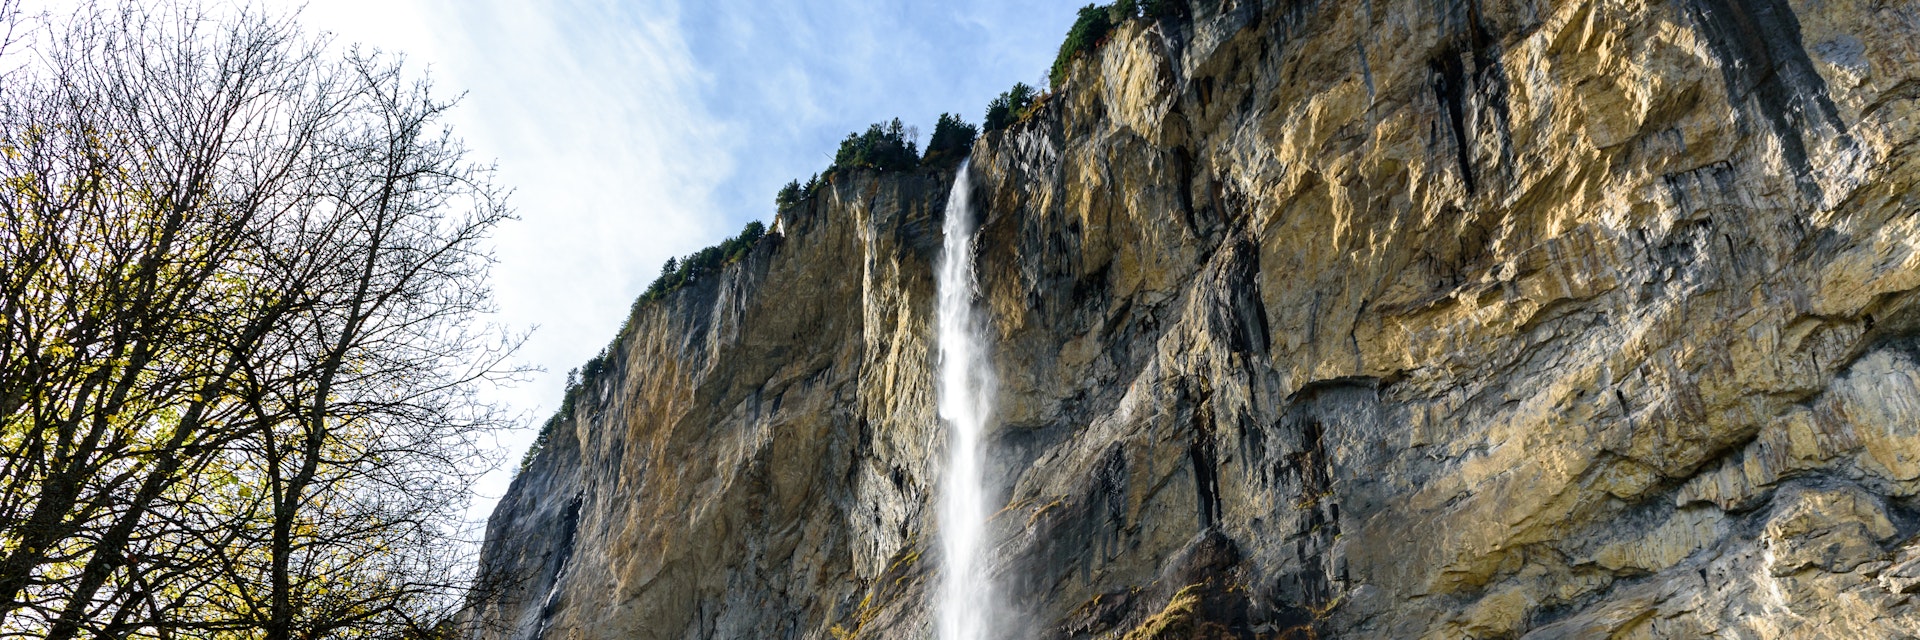 Staubbach Falls during autumn.